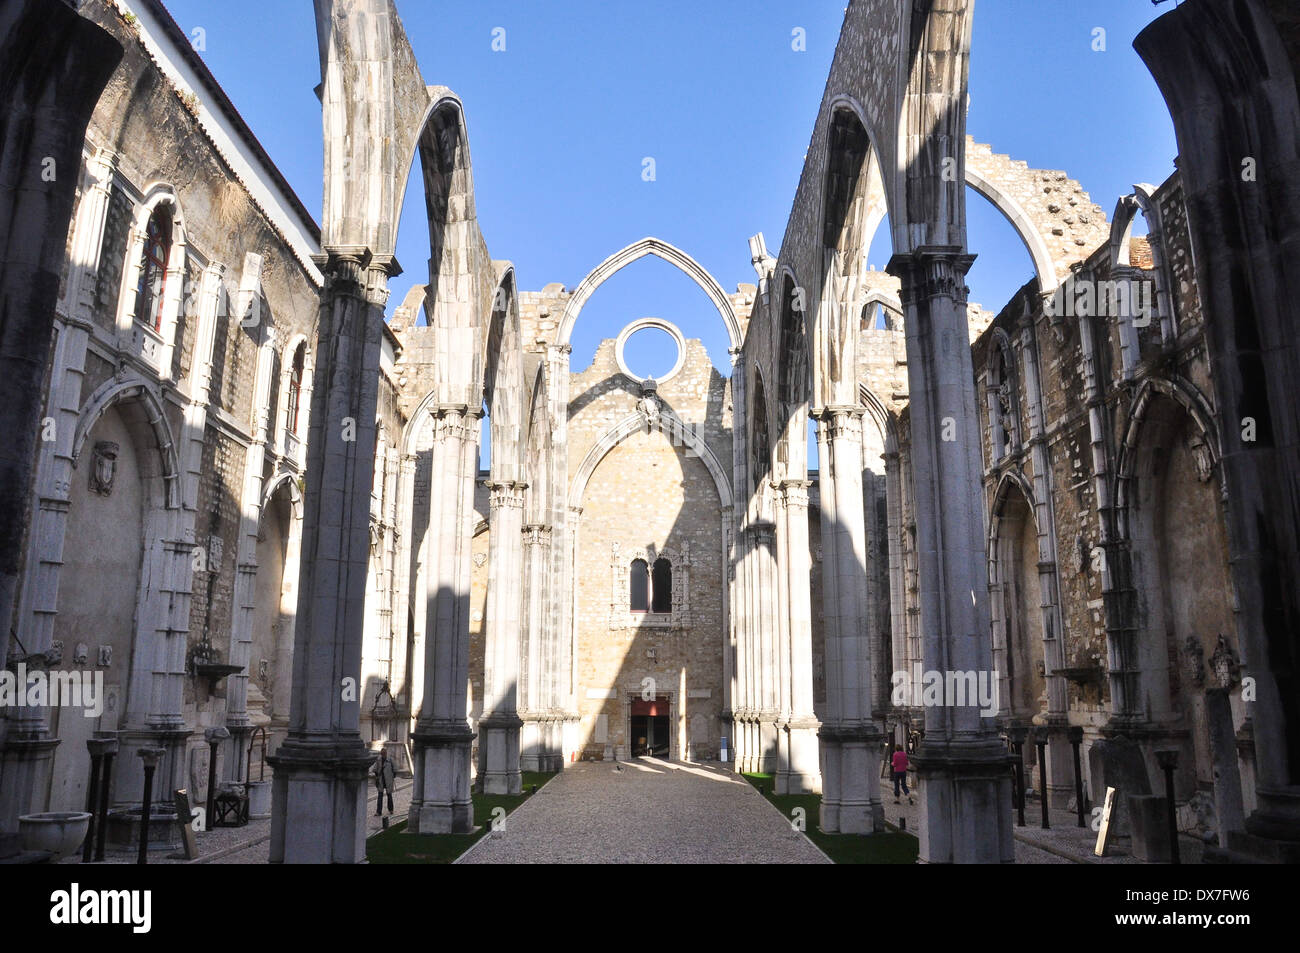 Ruines du couvent de Carmo, Lisbonne, Portugal Banque D'Images